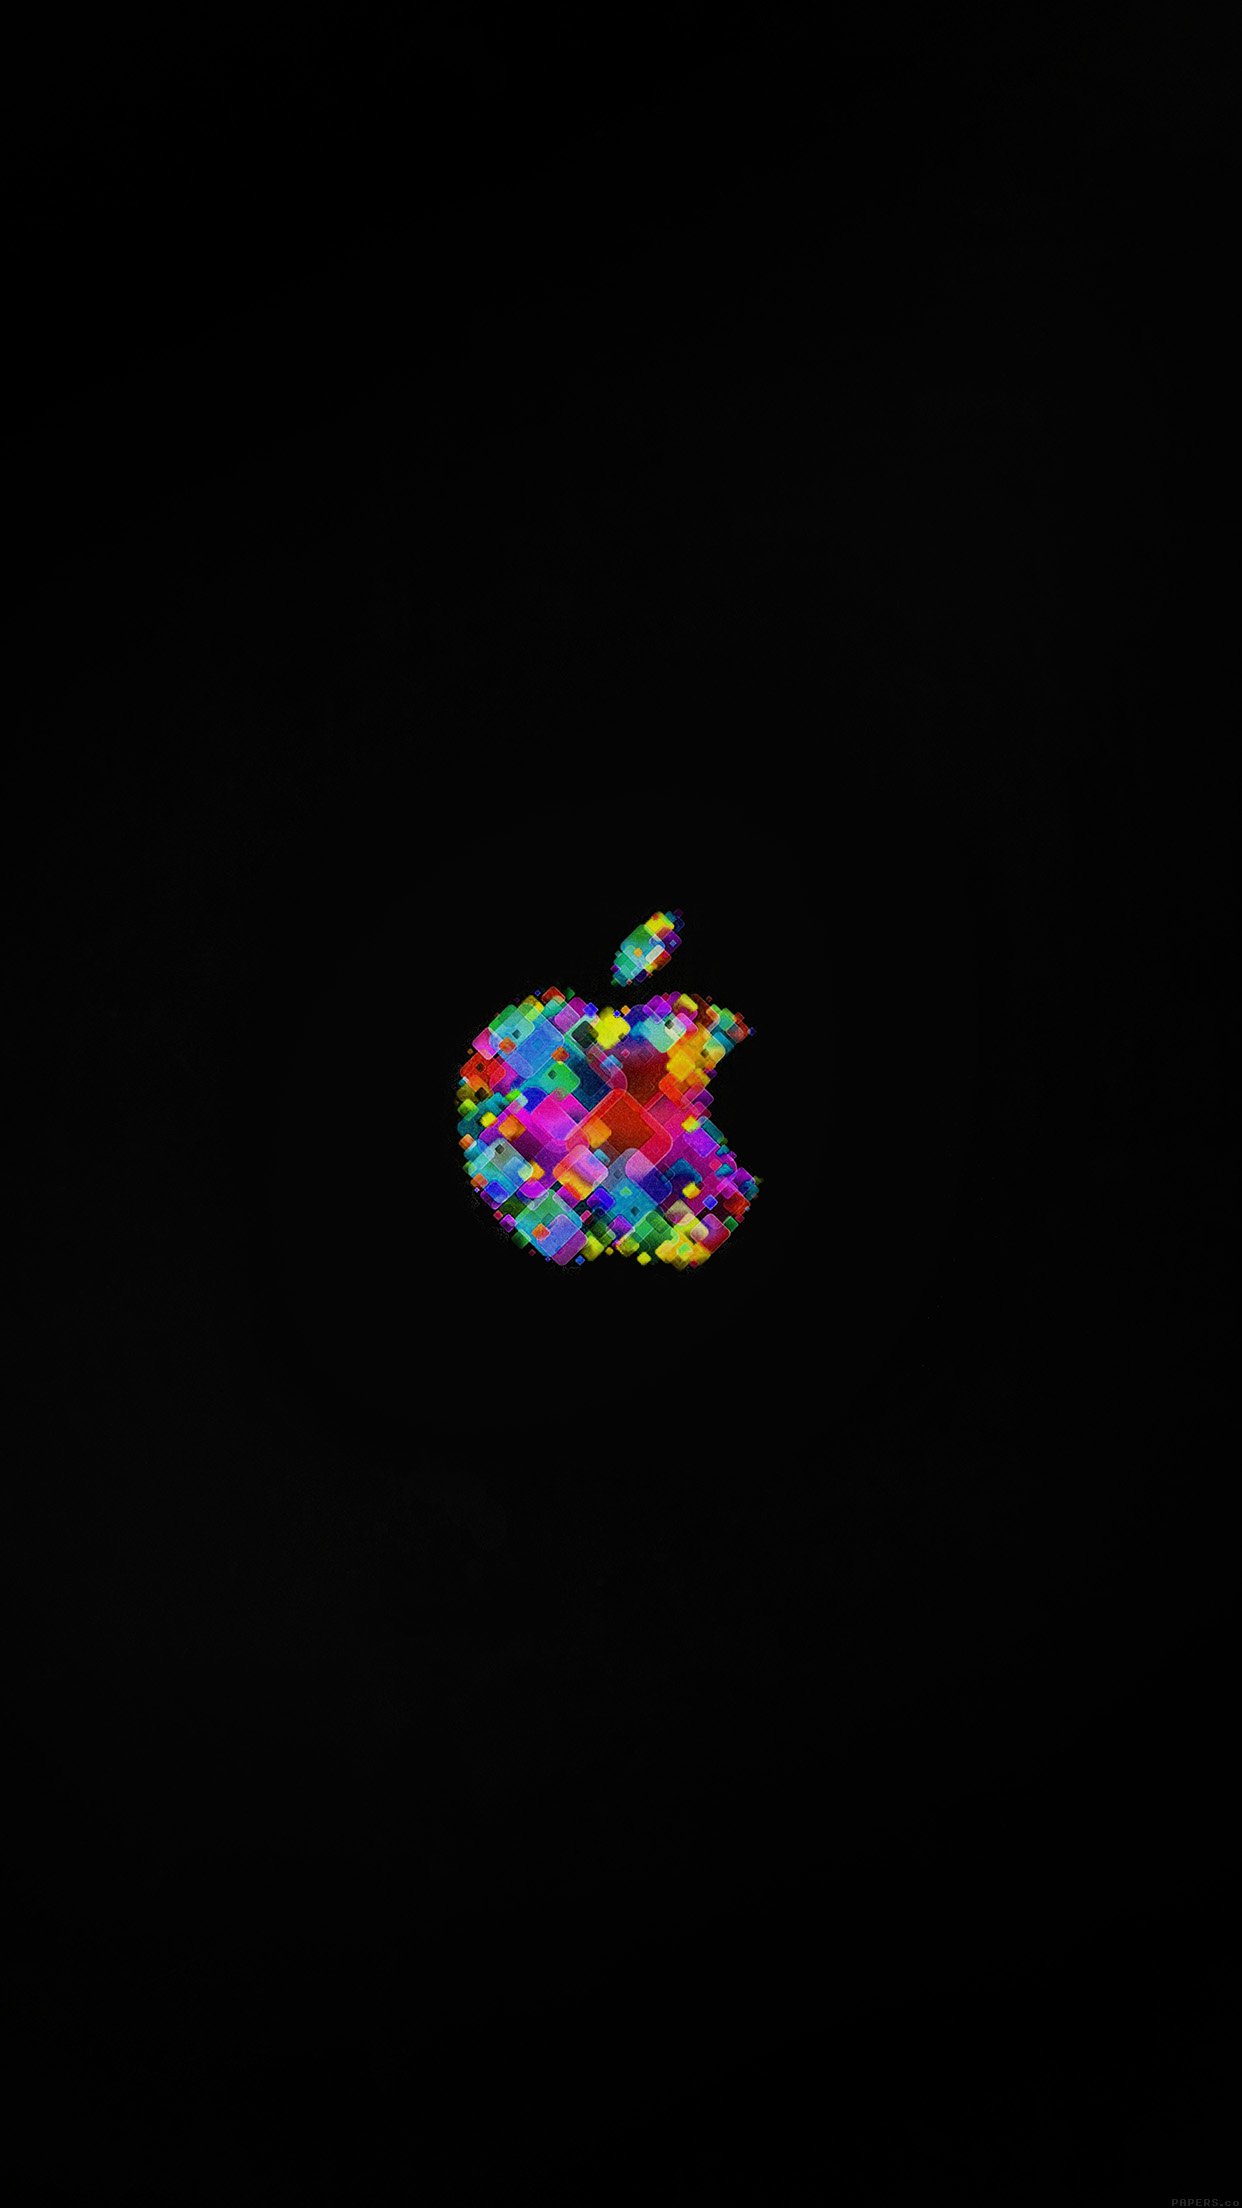 Apple Event Logo Art Dark Minimal Android wallpaper